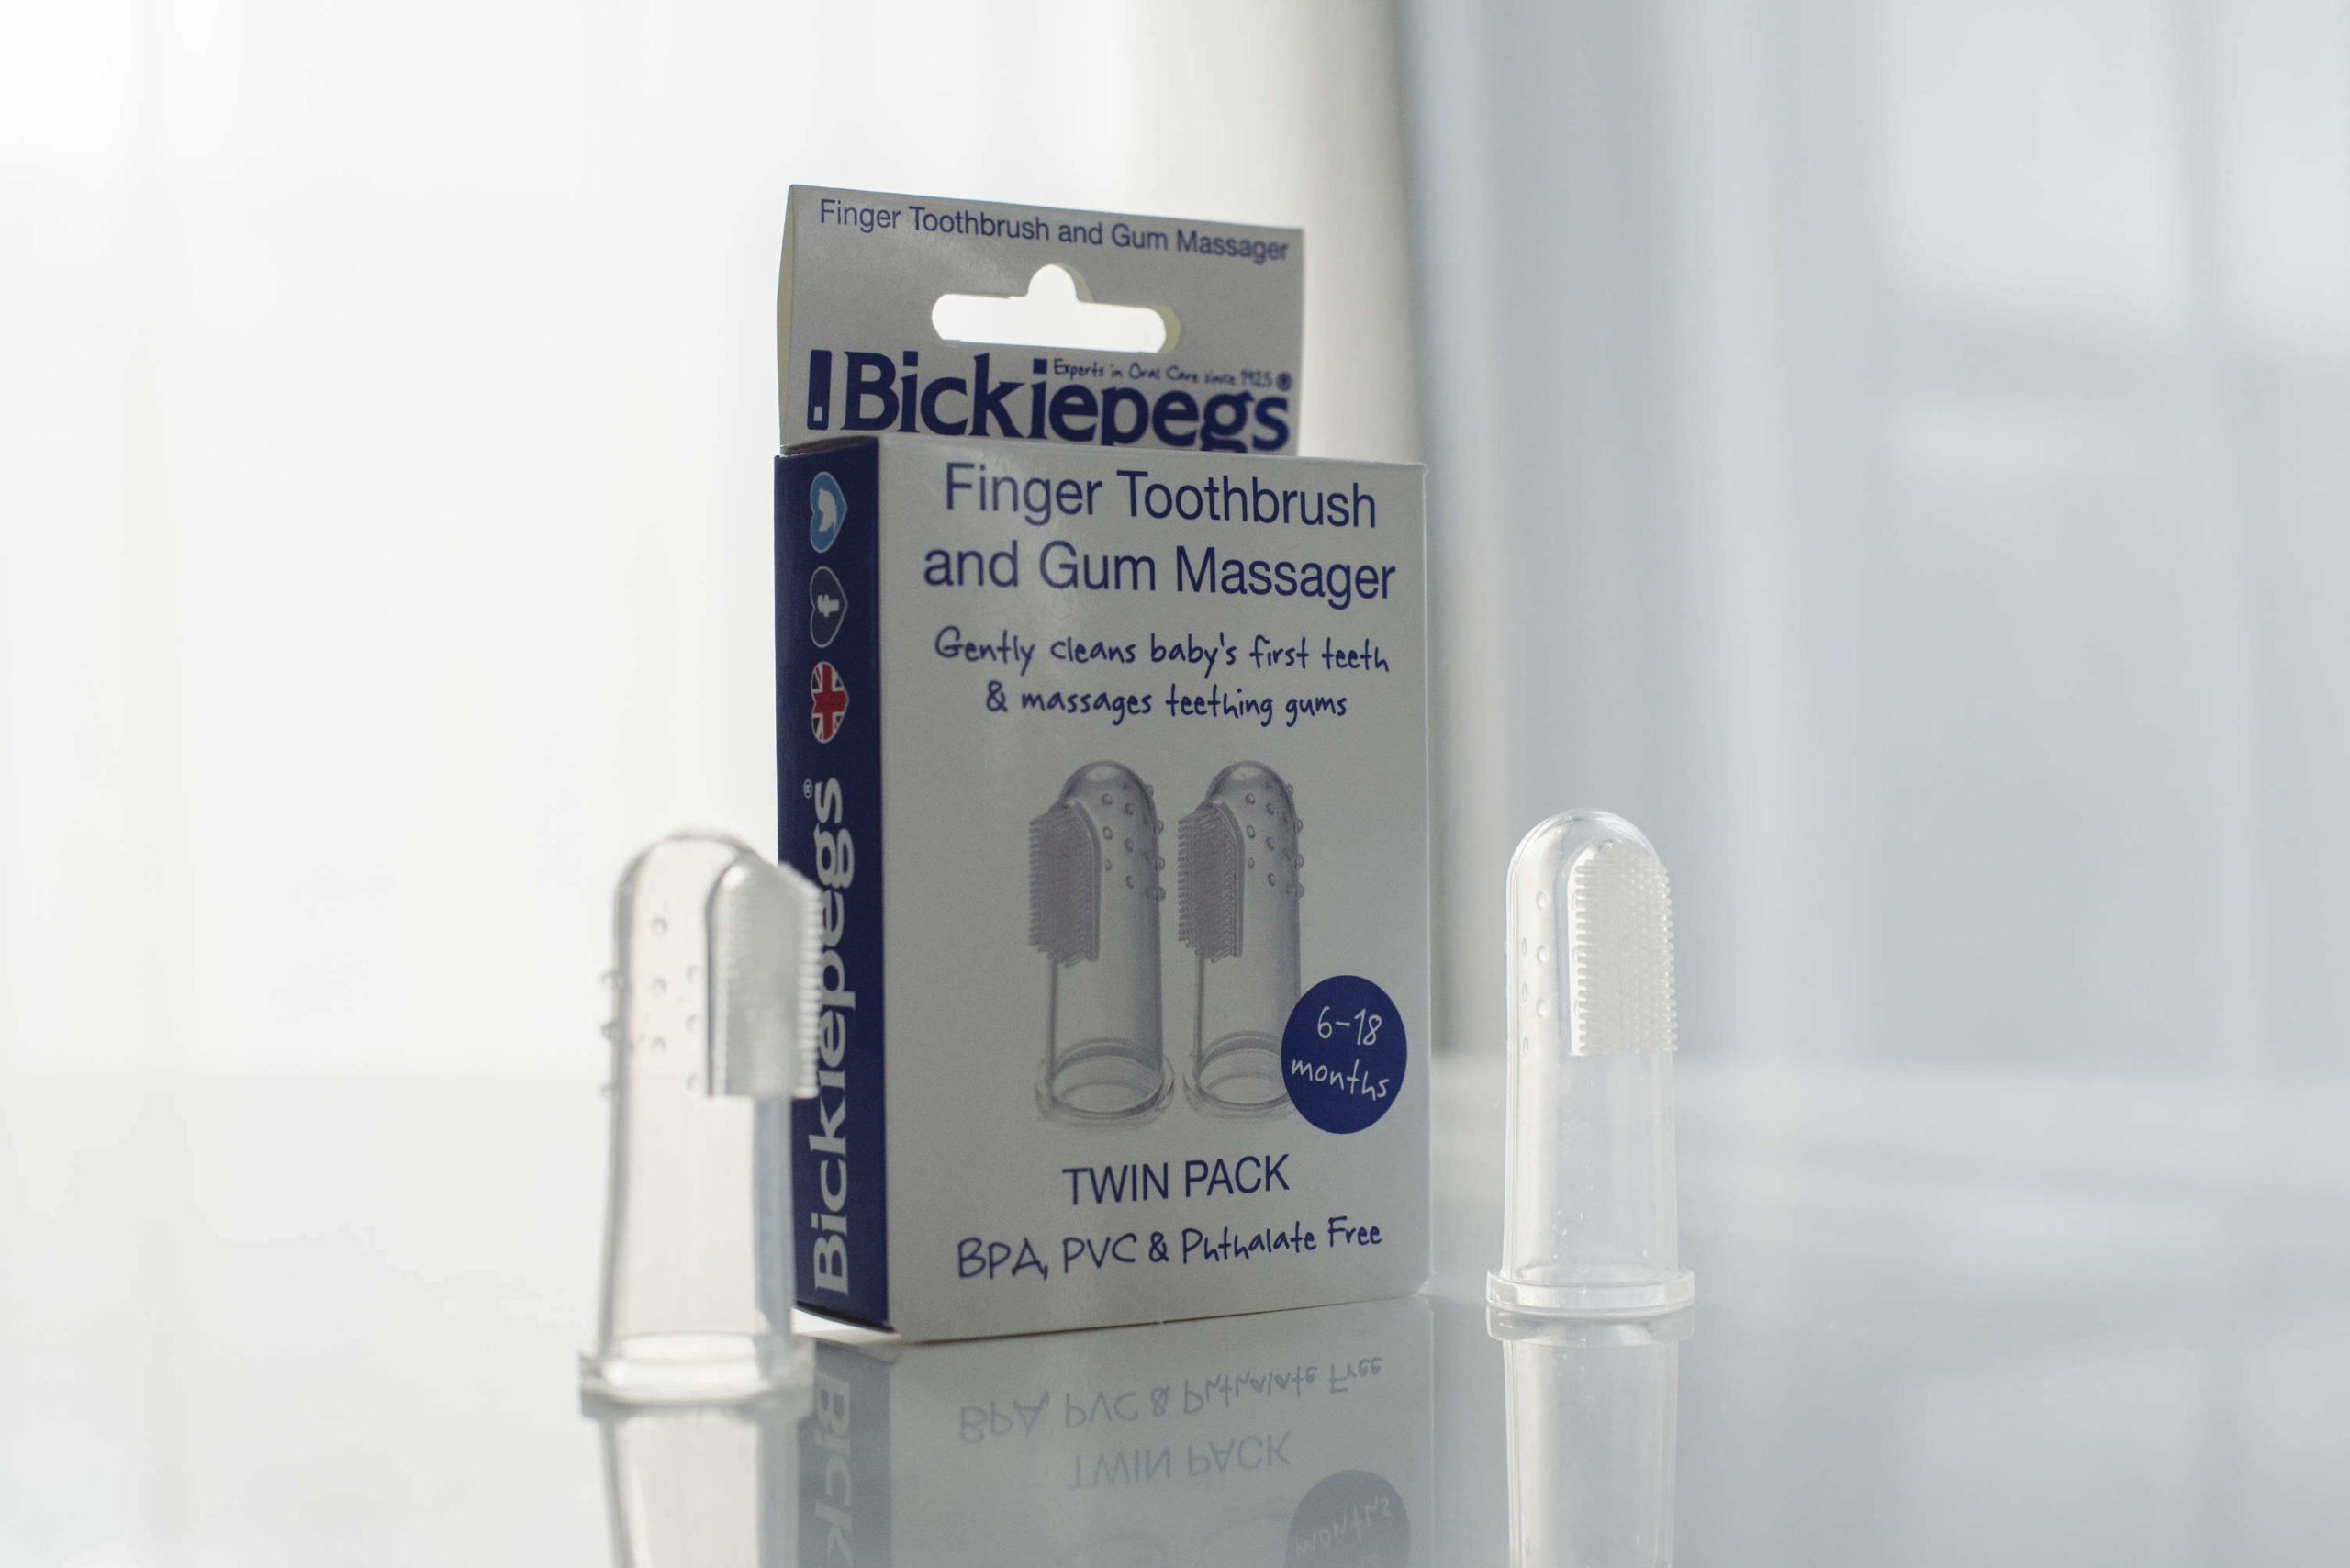 Bickiepegs Finger toothbrush & Gum Massager